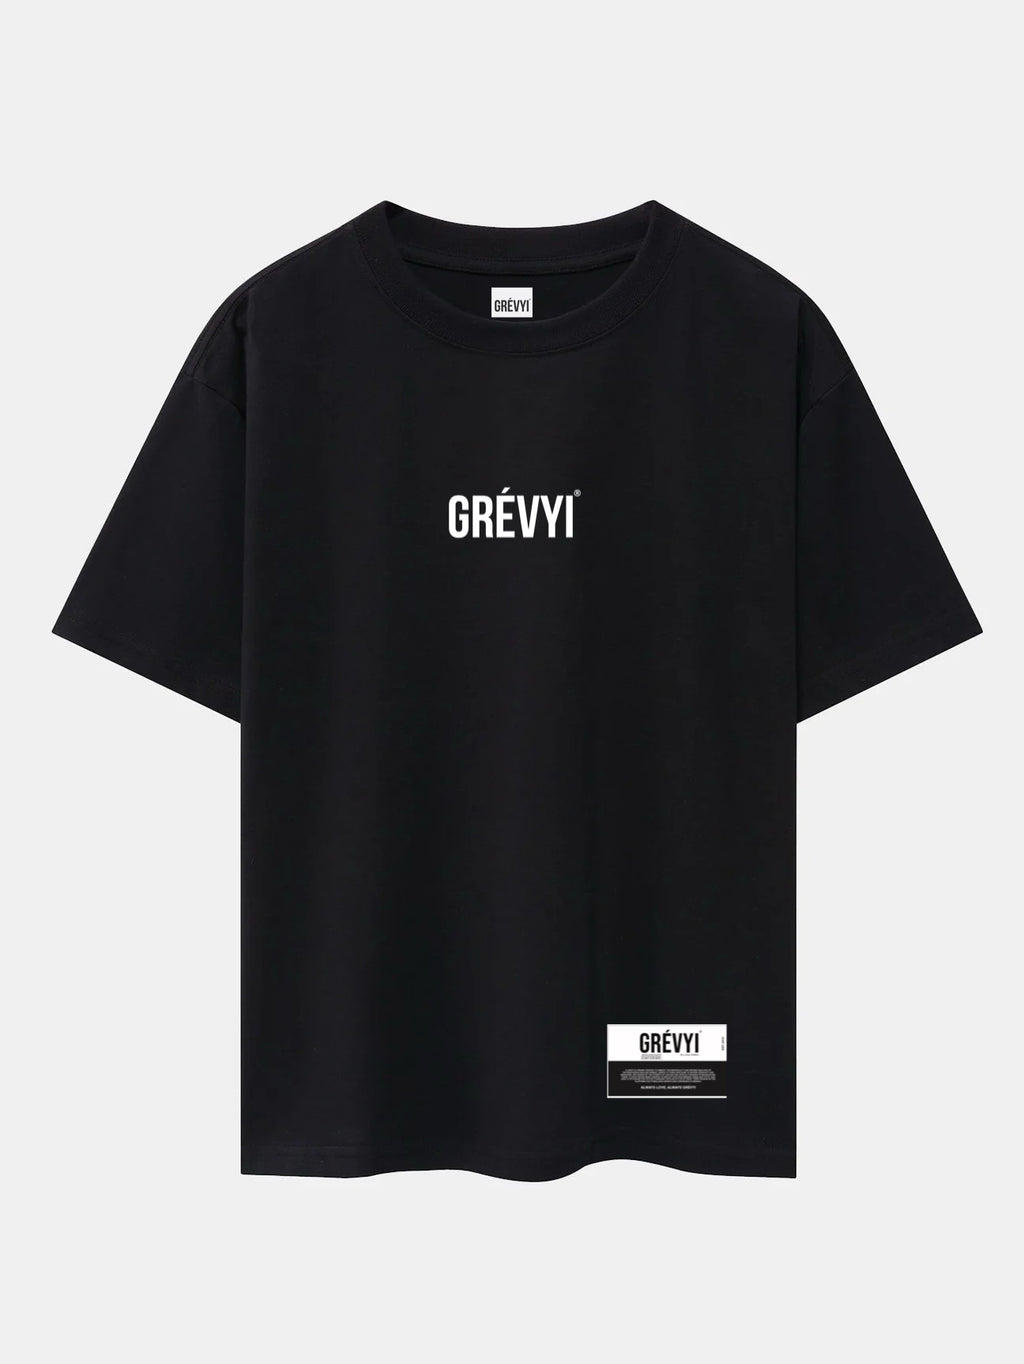 Grevyi 3d logo (black) tee